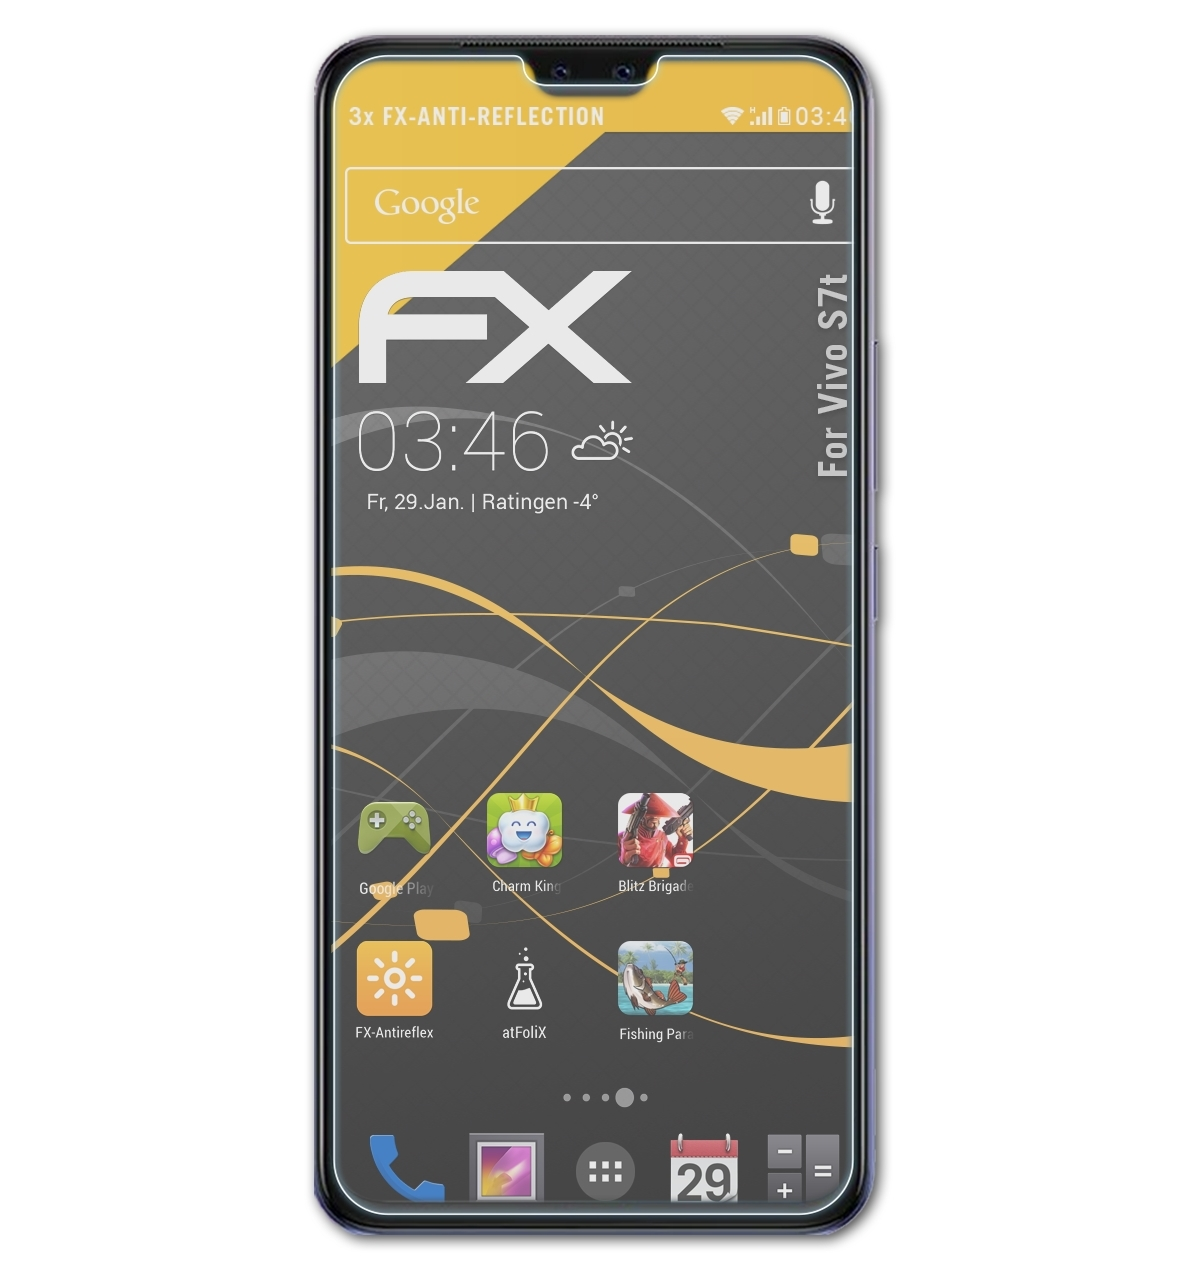 ATFOLIX 3x FX-Antireflex Displayschutz(für Vivo S7t)